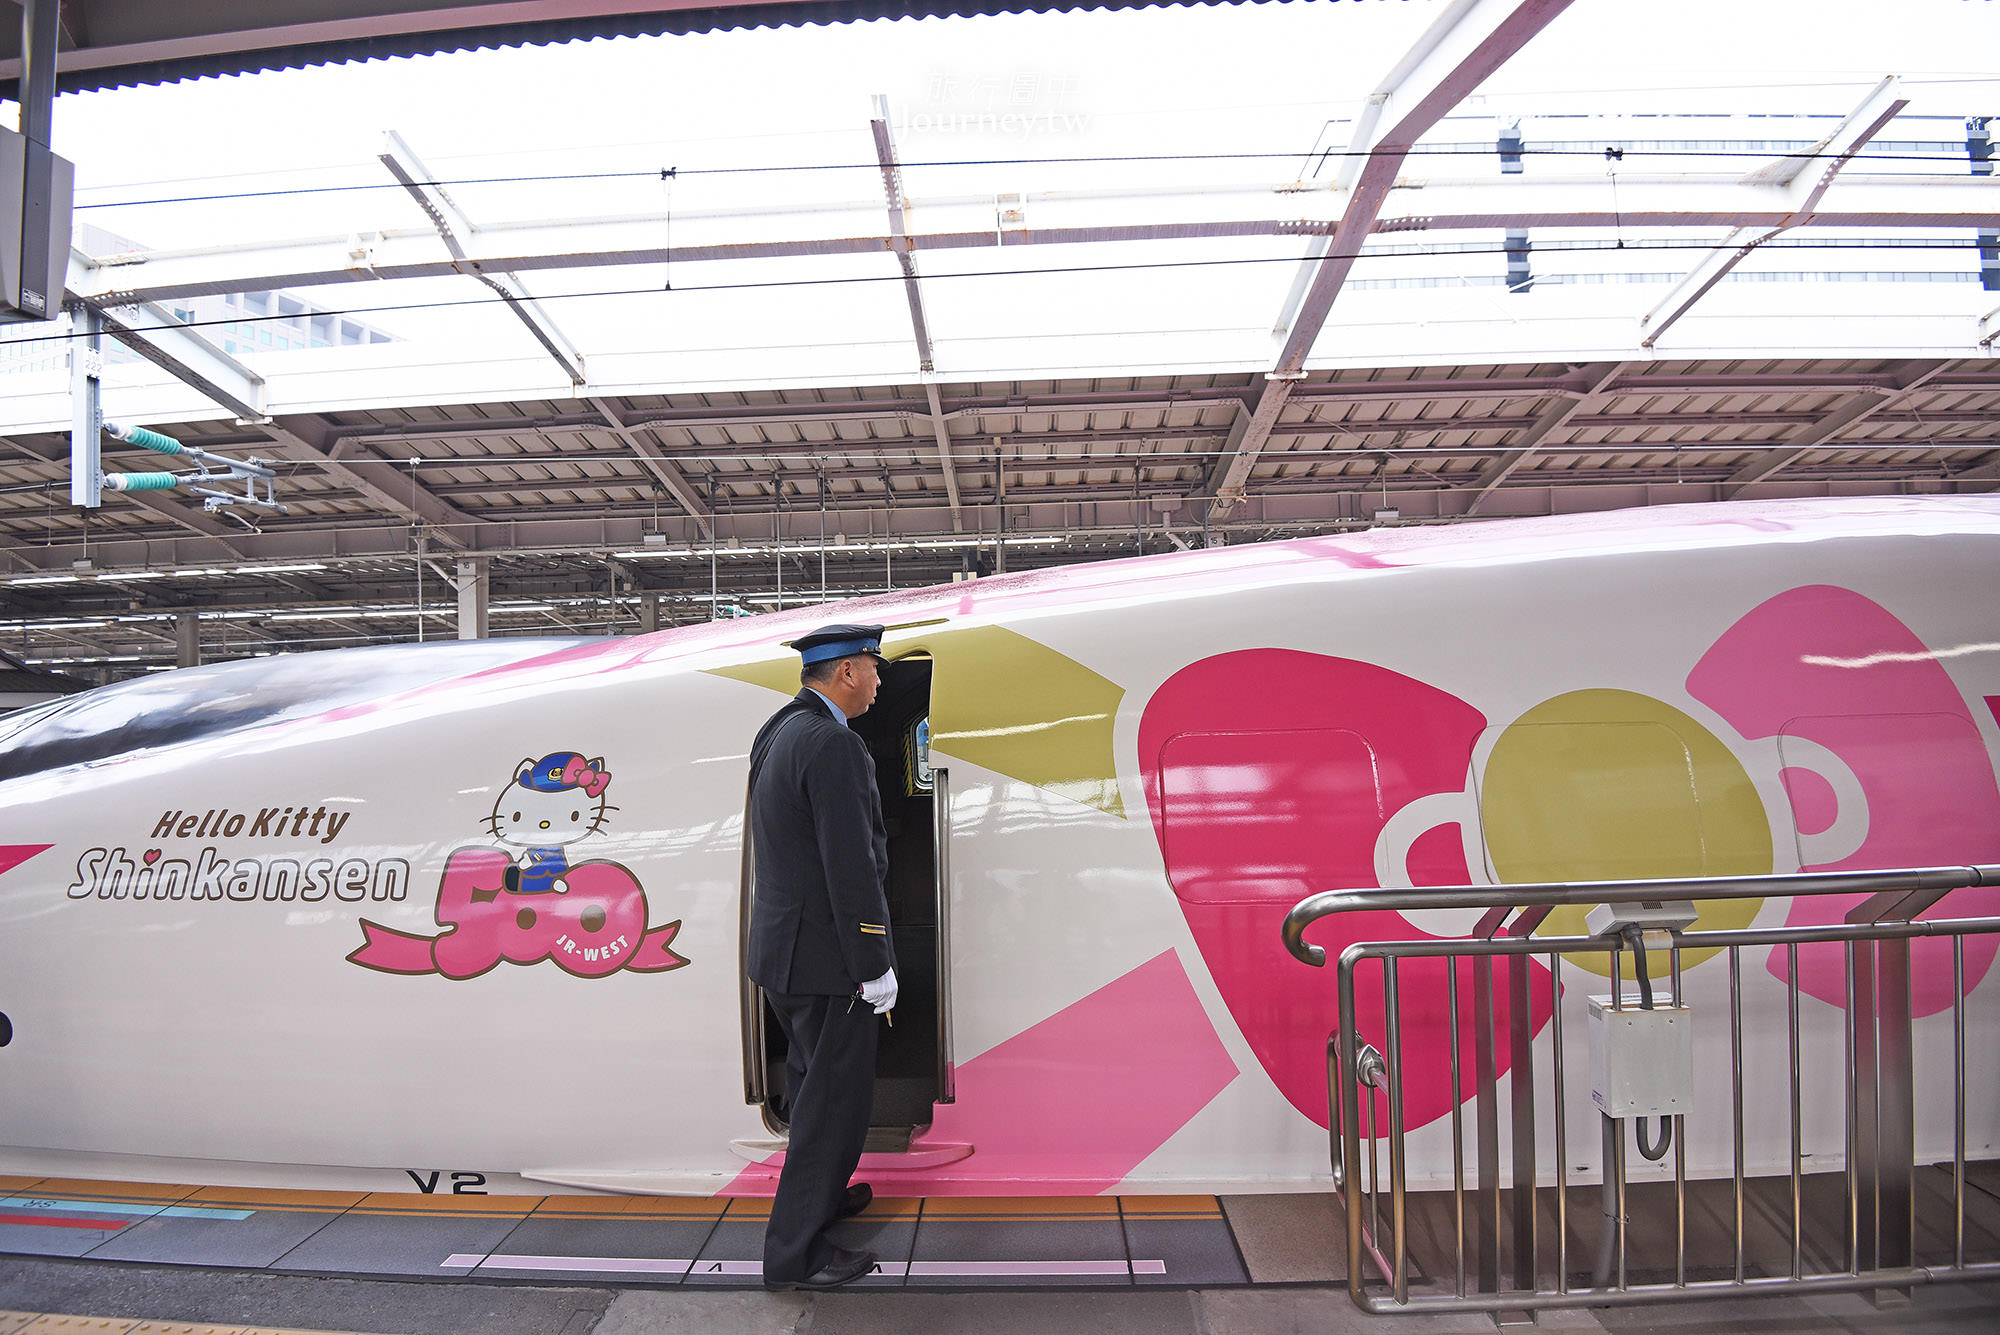 新大阪 博多 Hello Kitty 新幹線 綁上緞帶的粉紅色kitty車廂大公開 列車時刻 搭乘資訊 許傑 旅行圖中